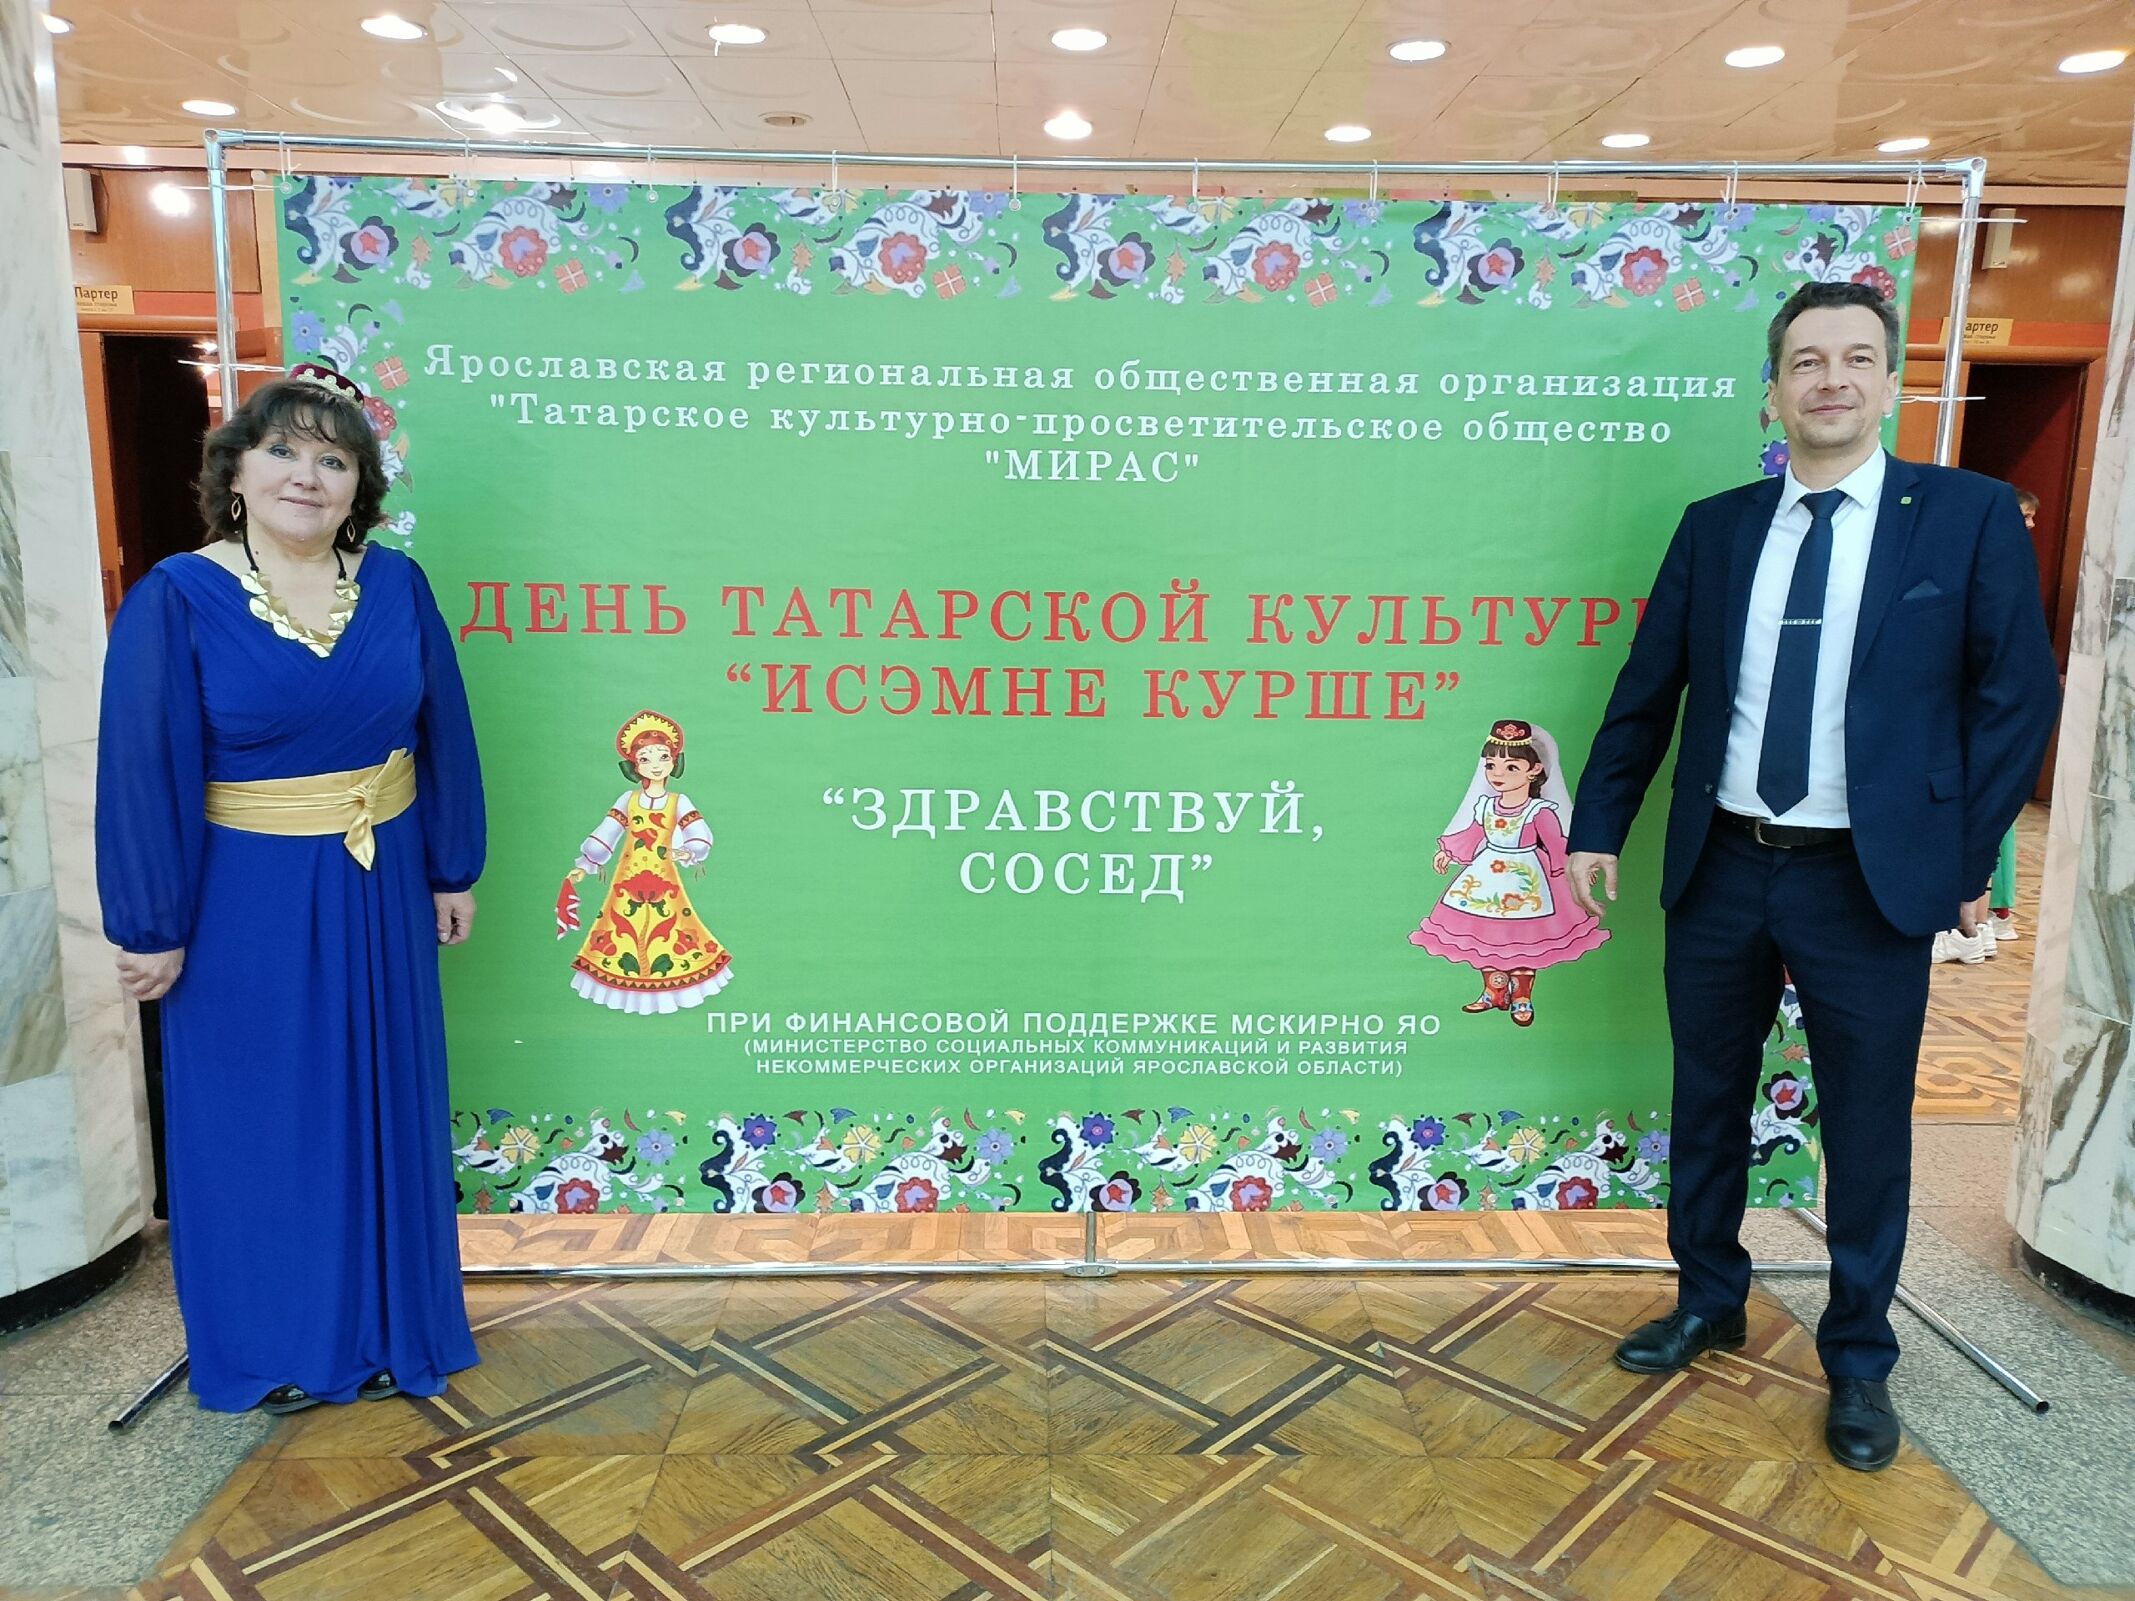 День татарской культуры «Исэнме курше» («Здравствуй сосед»)